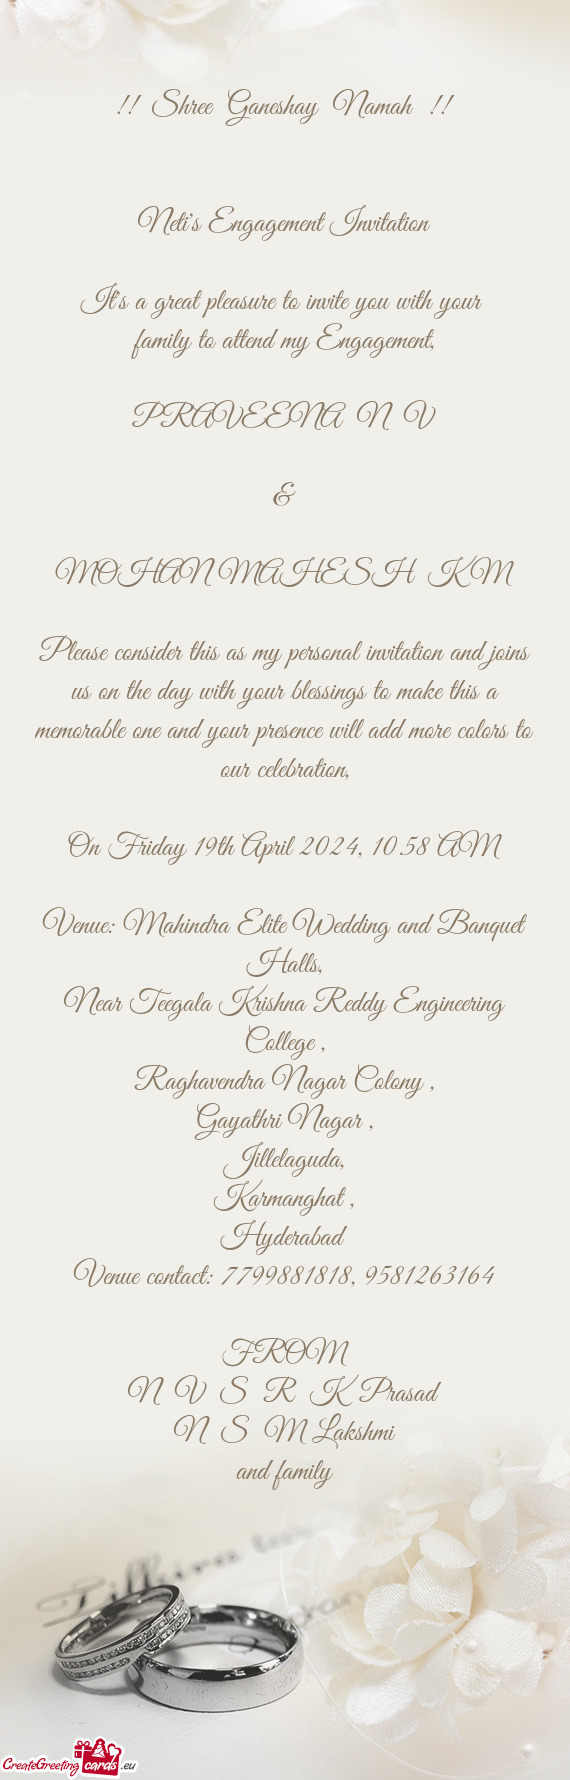 Venue: Mahindra Elite Wedding and Banquet Halls